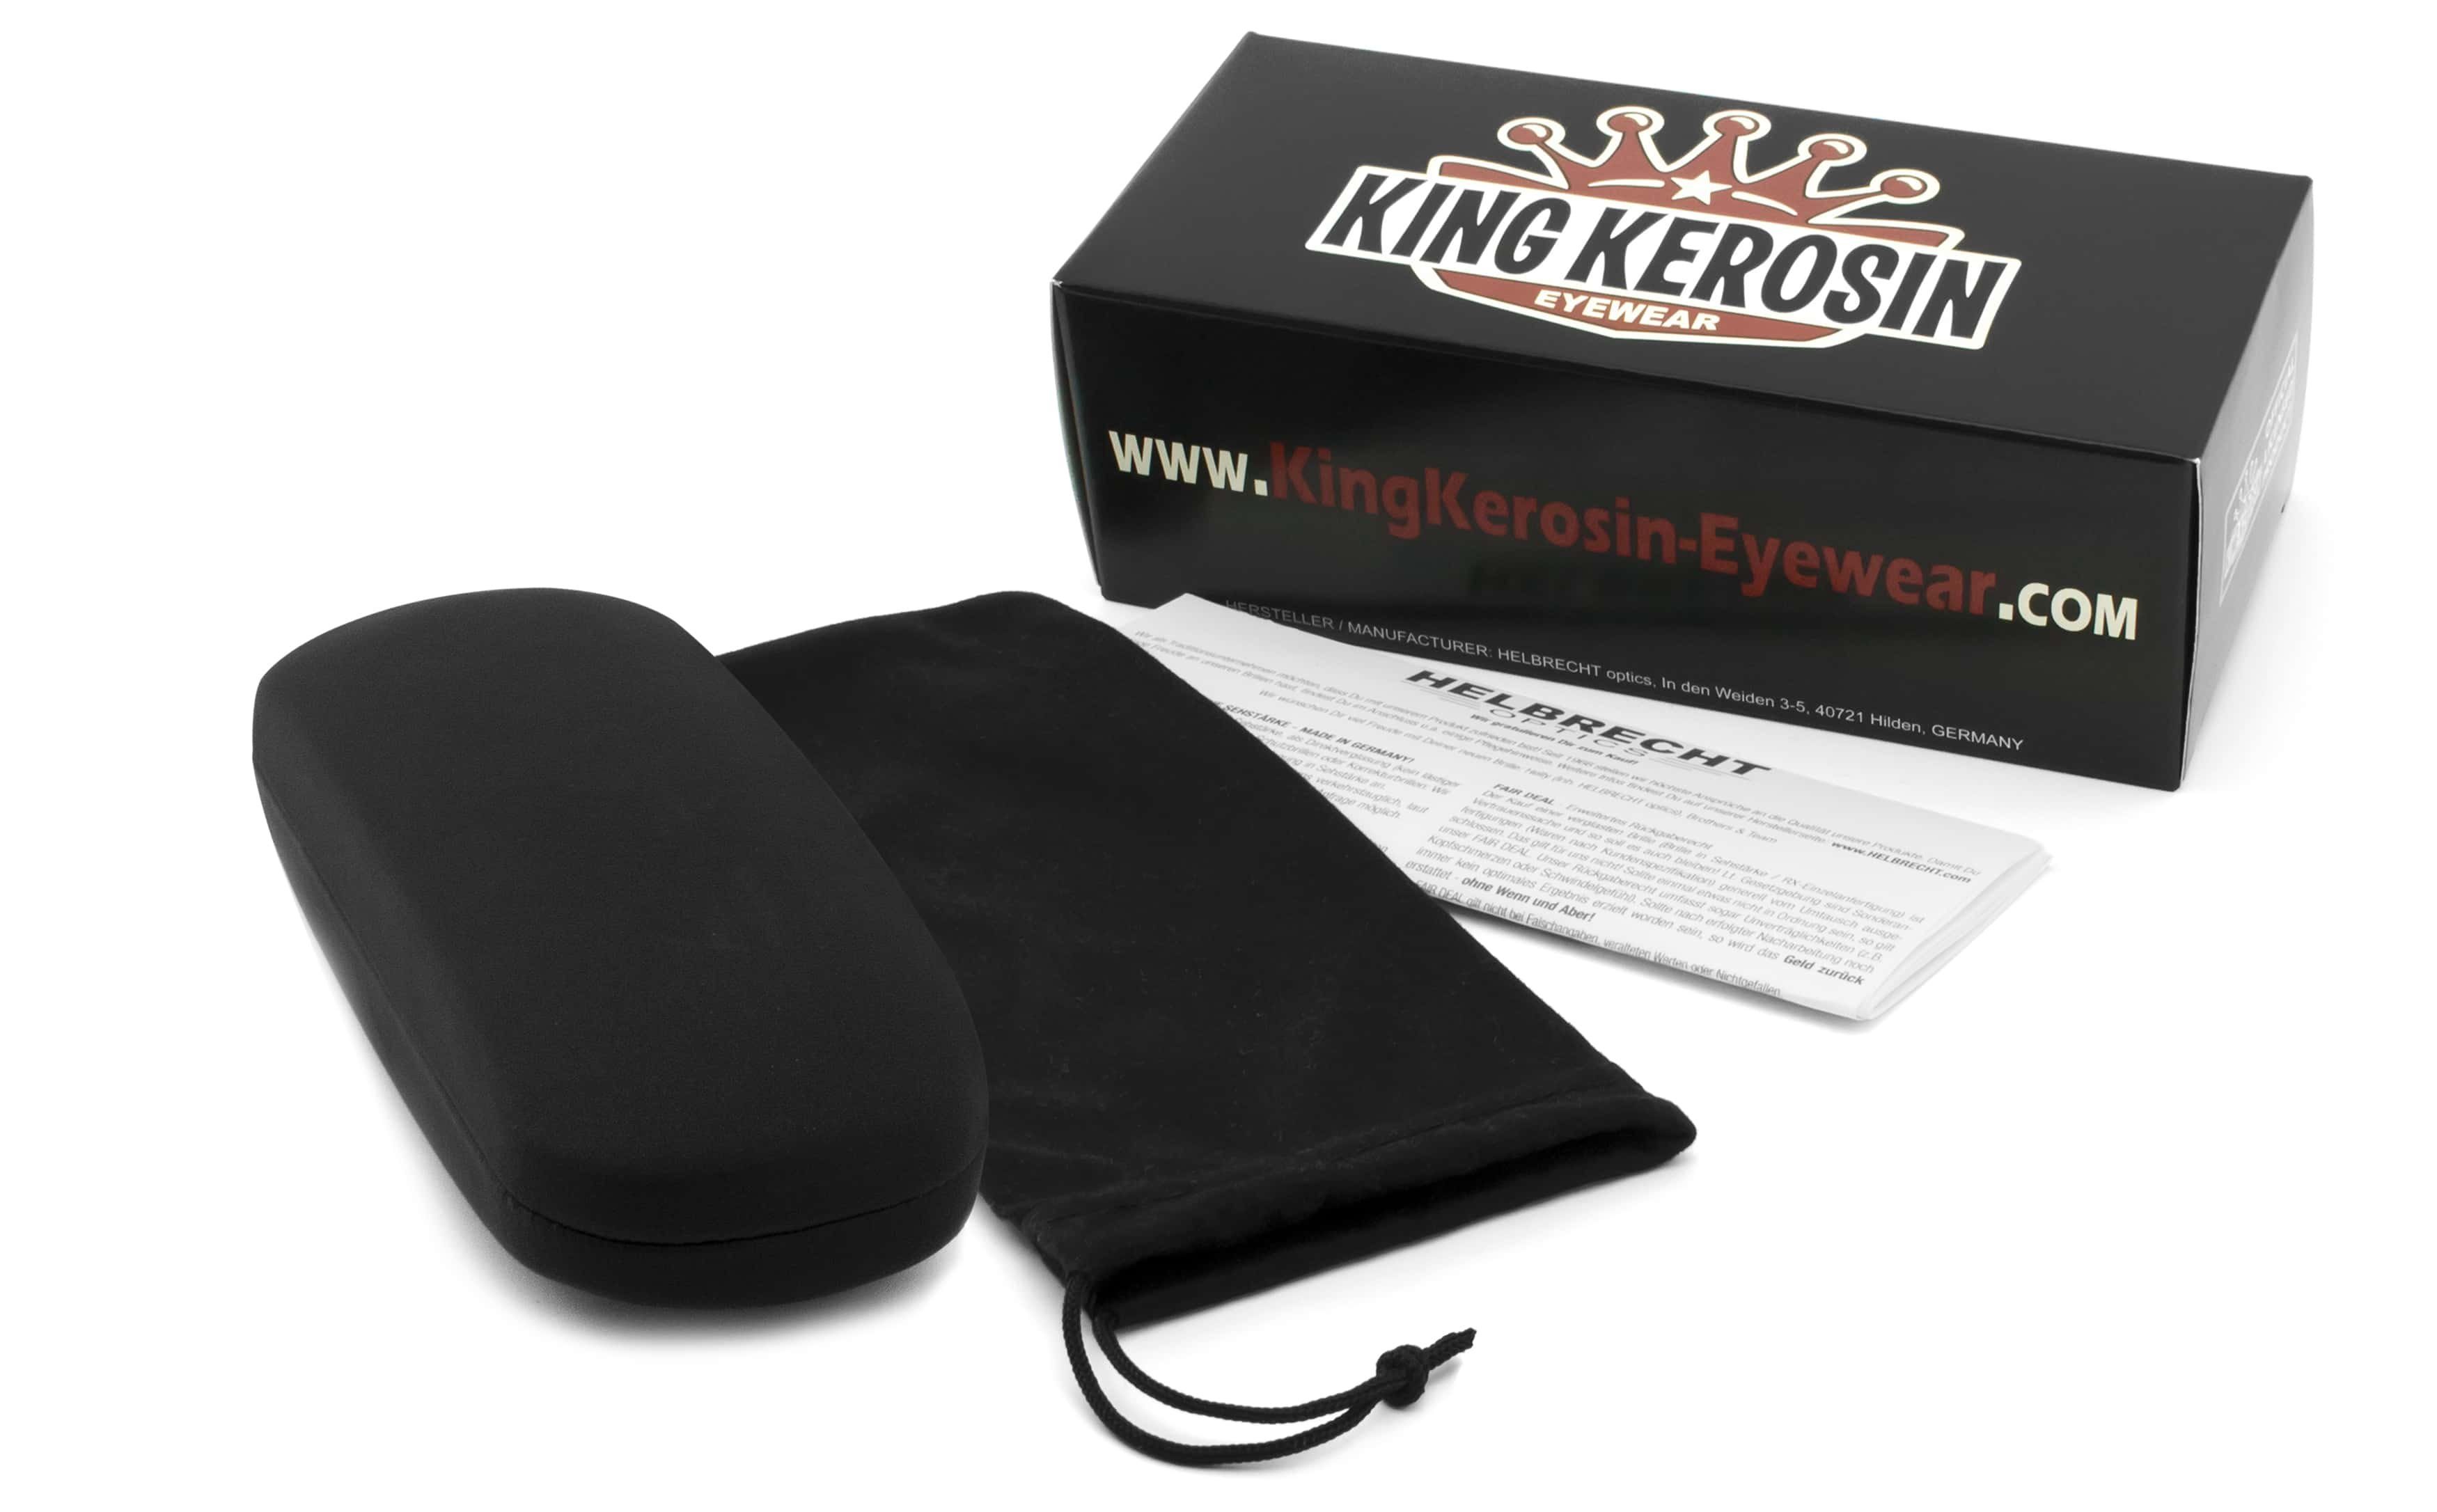 Bügel KingKerosin mit Flex-Scharnieren KK321, Brille